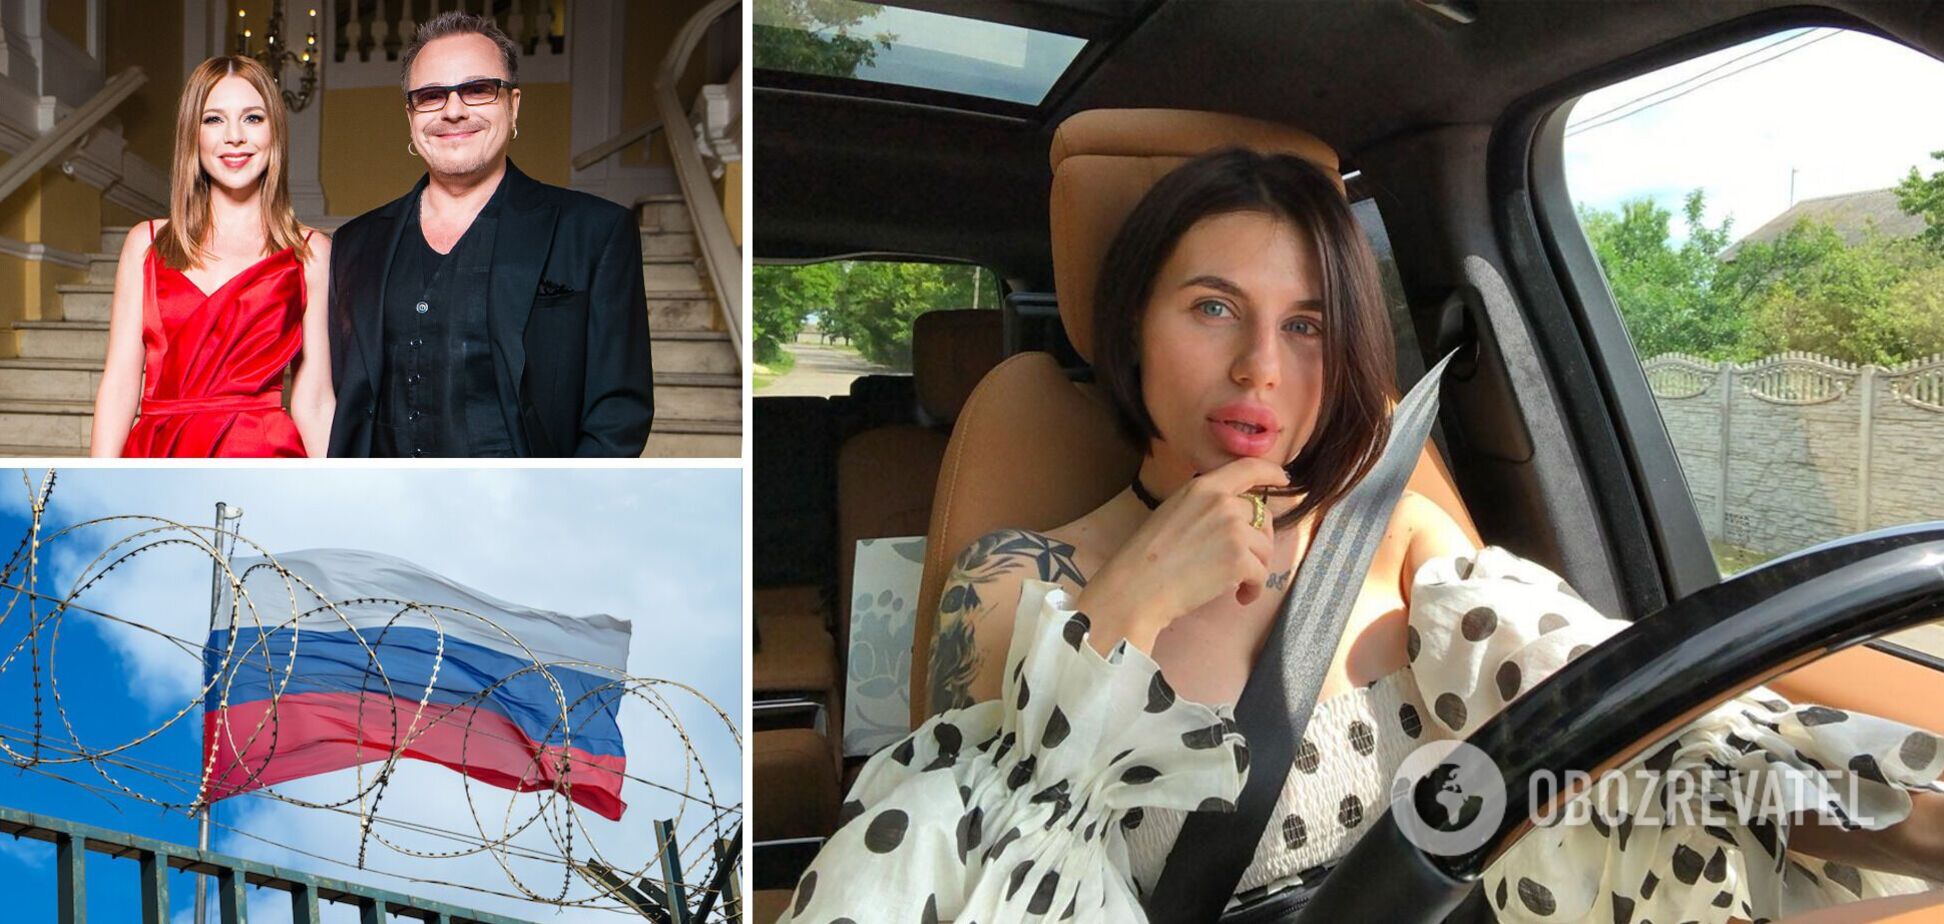 Скандальна блогерка Алхім влаштувала провокацію з російською піснею і розізлила мережу